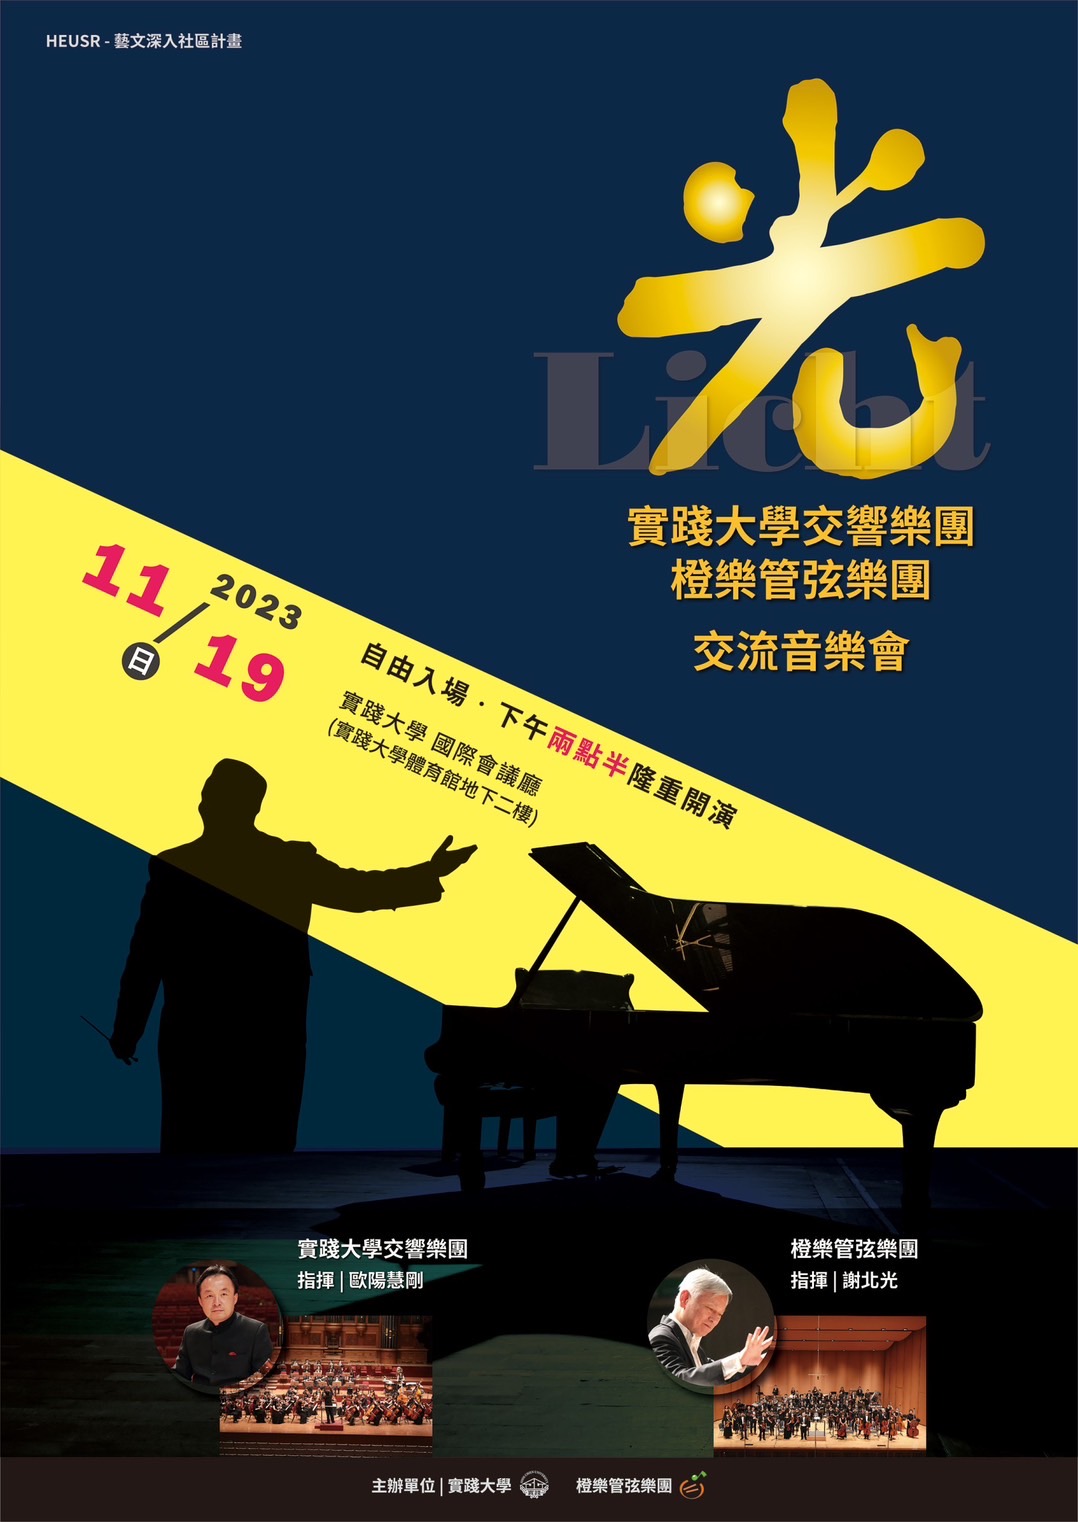 《實踐大學交響樂團與橙樂管弦樂團交流音樂會》海報